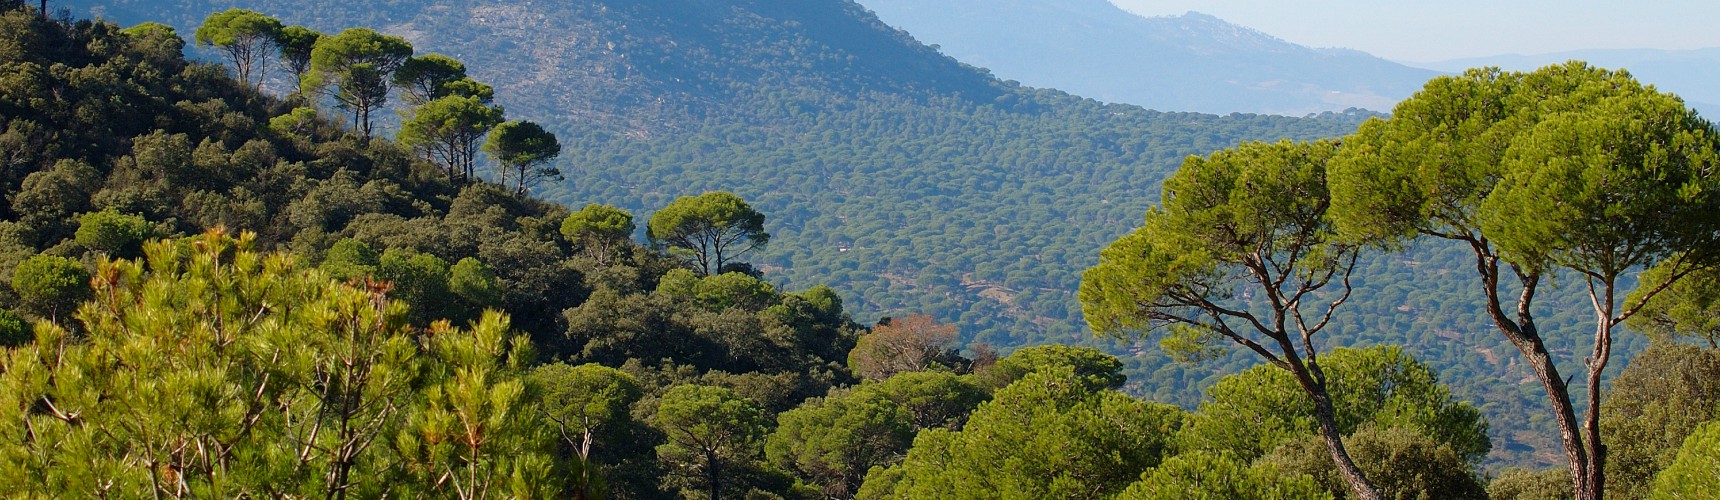 Mediterranean pine